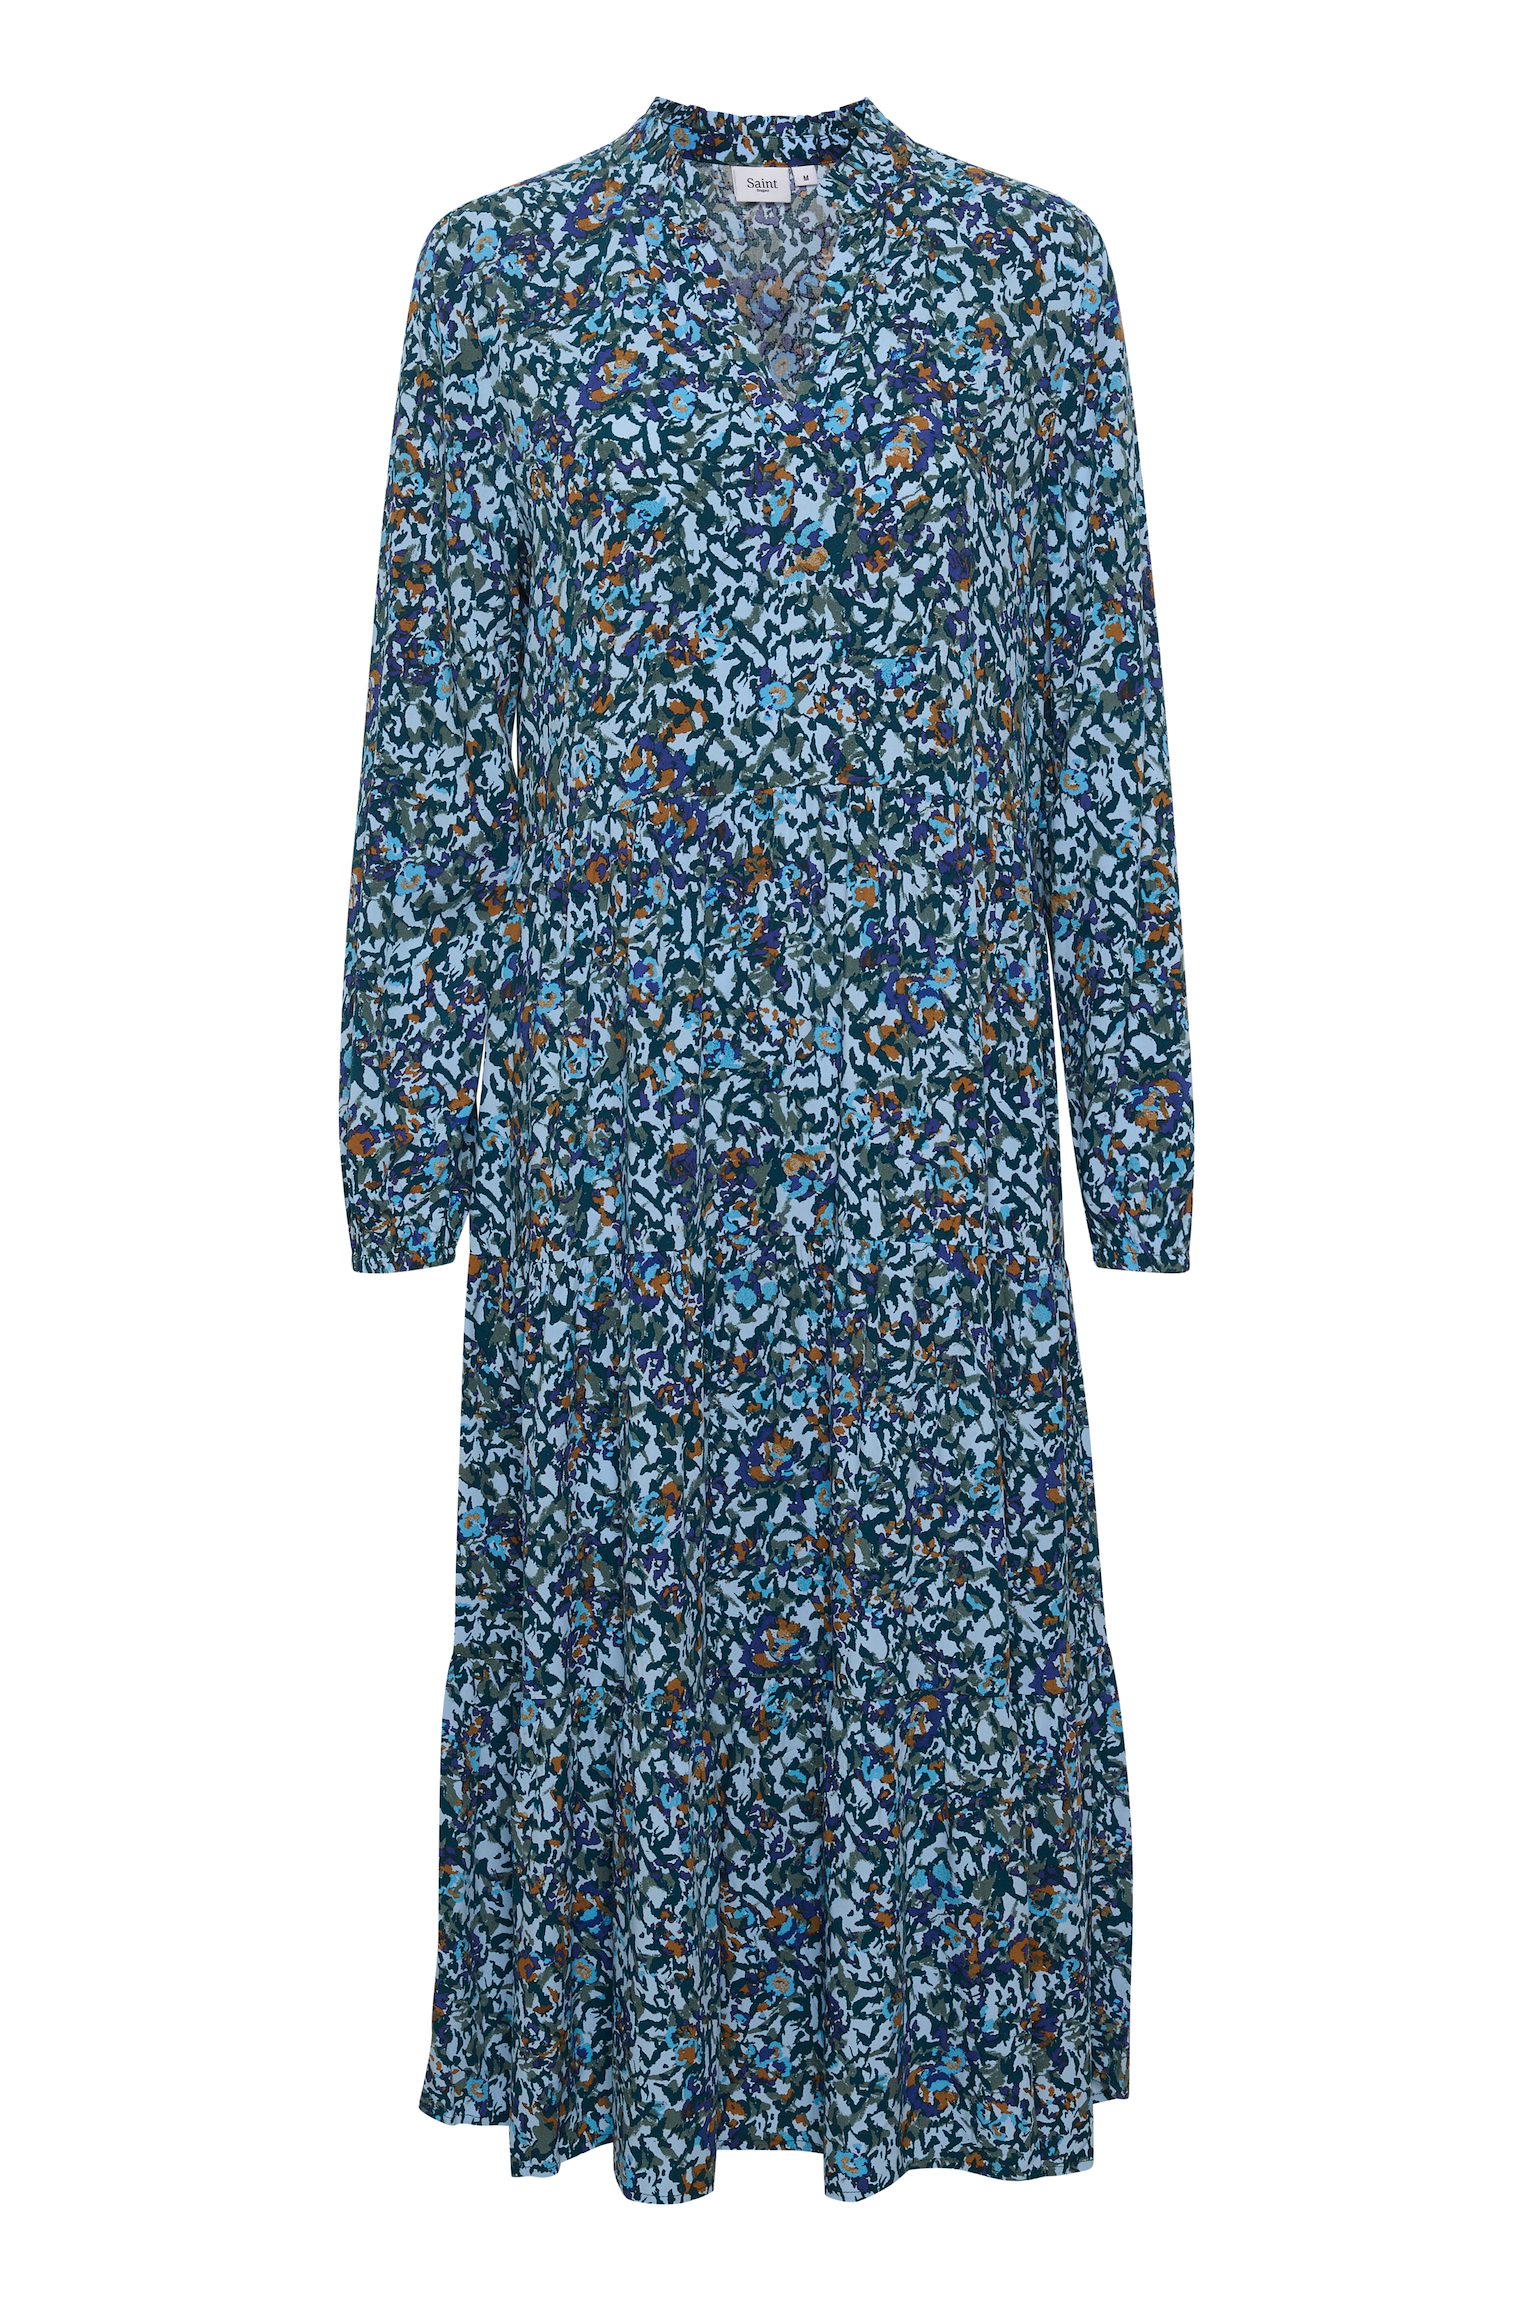 Saint Tropez EDASZ Maxi Atlantis – DRESS Cashmere Cashmere Floral Blue Fig